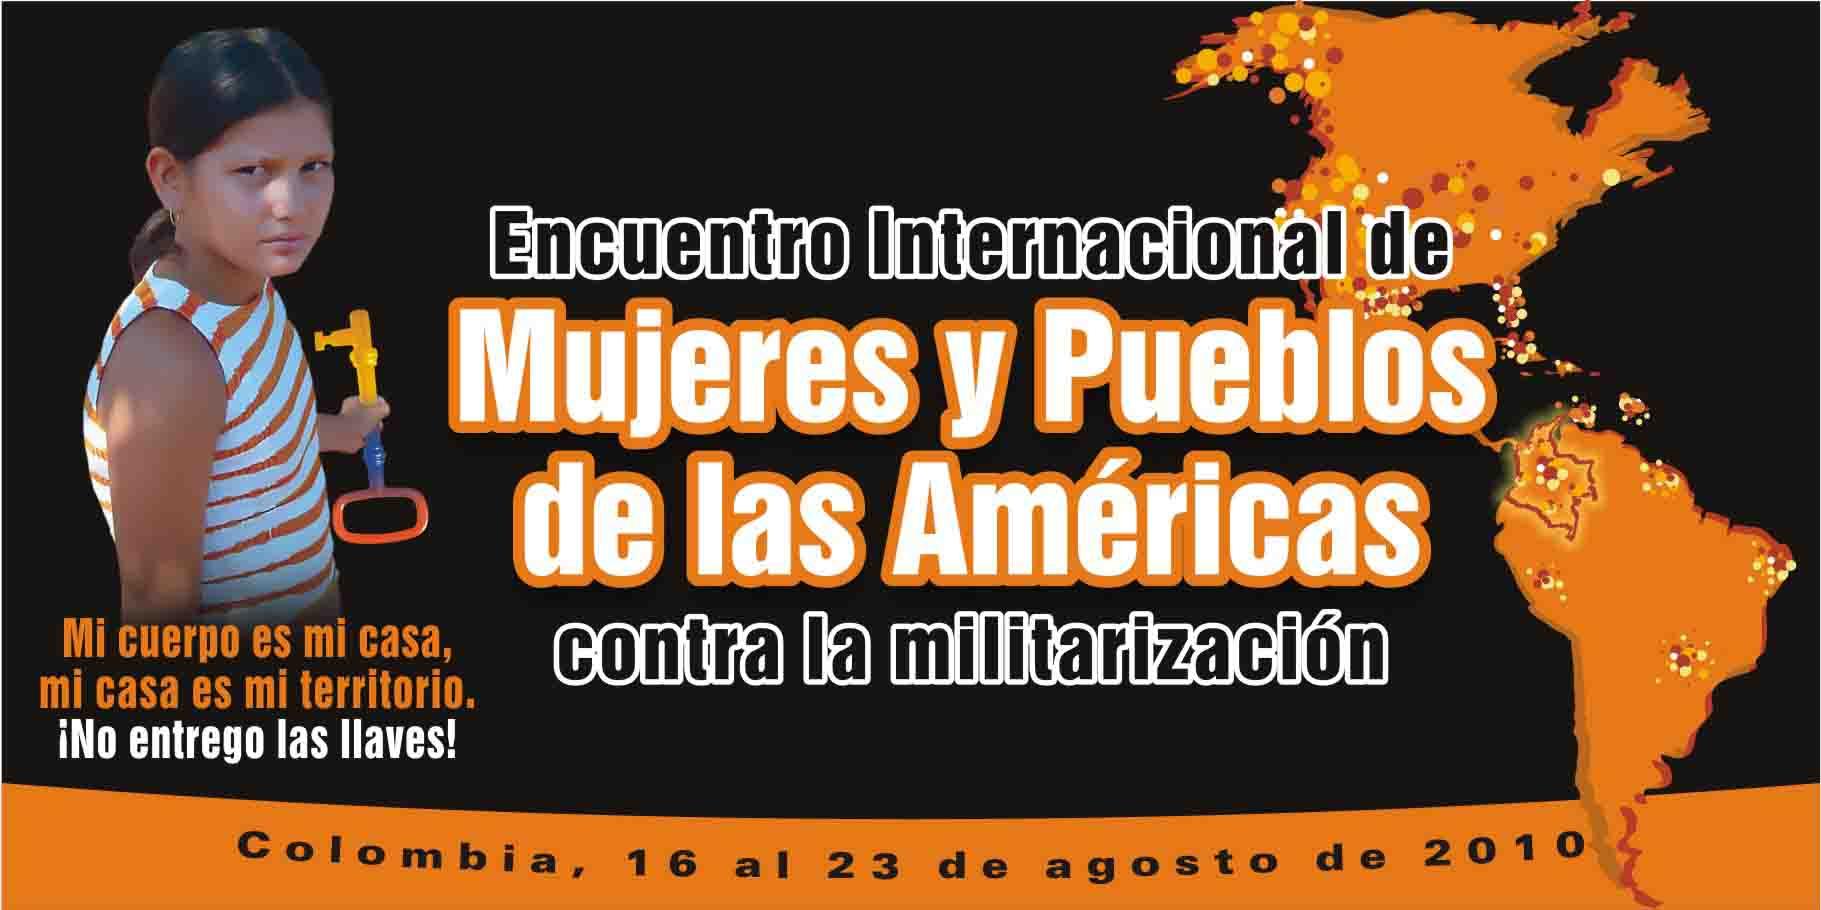 Encuentro Internacional de mujeres y pueblos de las Américas contra la militarización